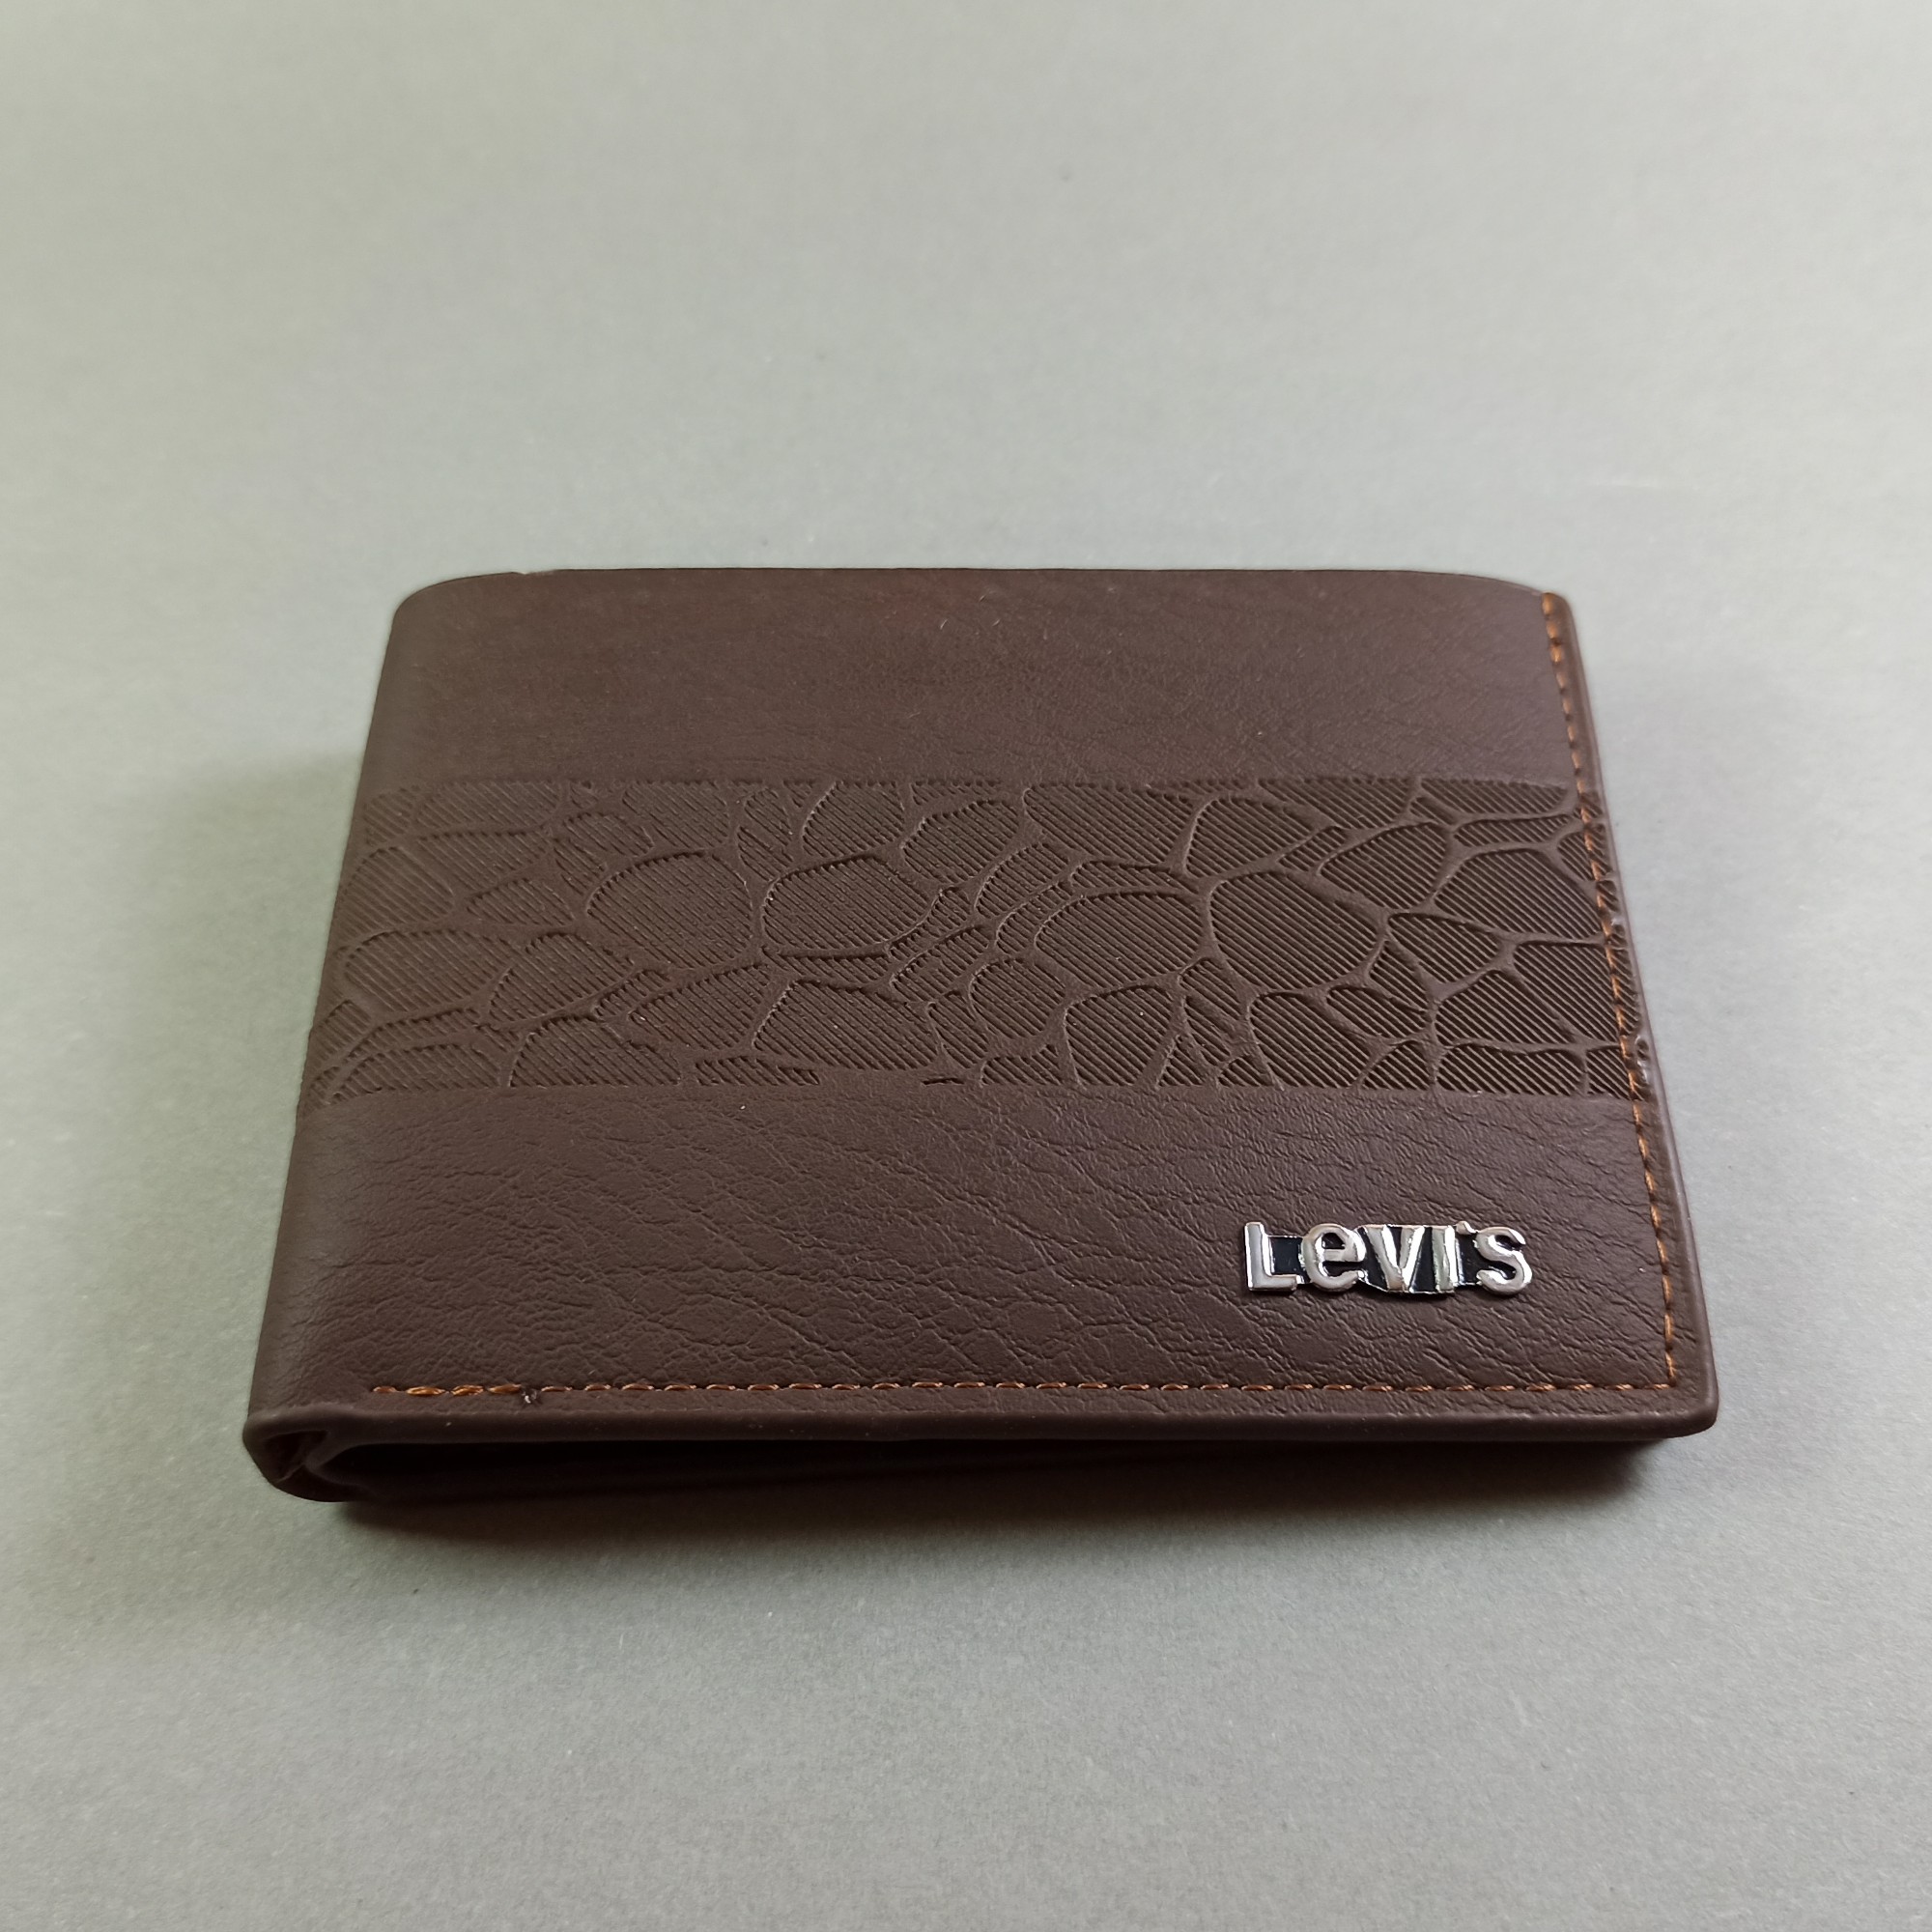 levi's purse price